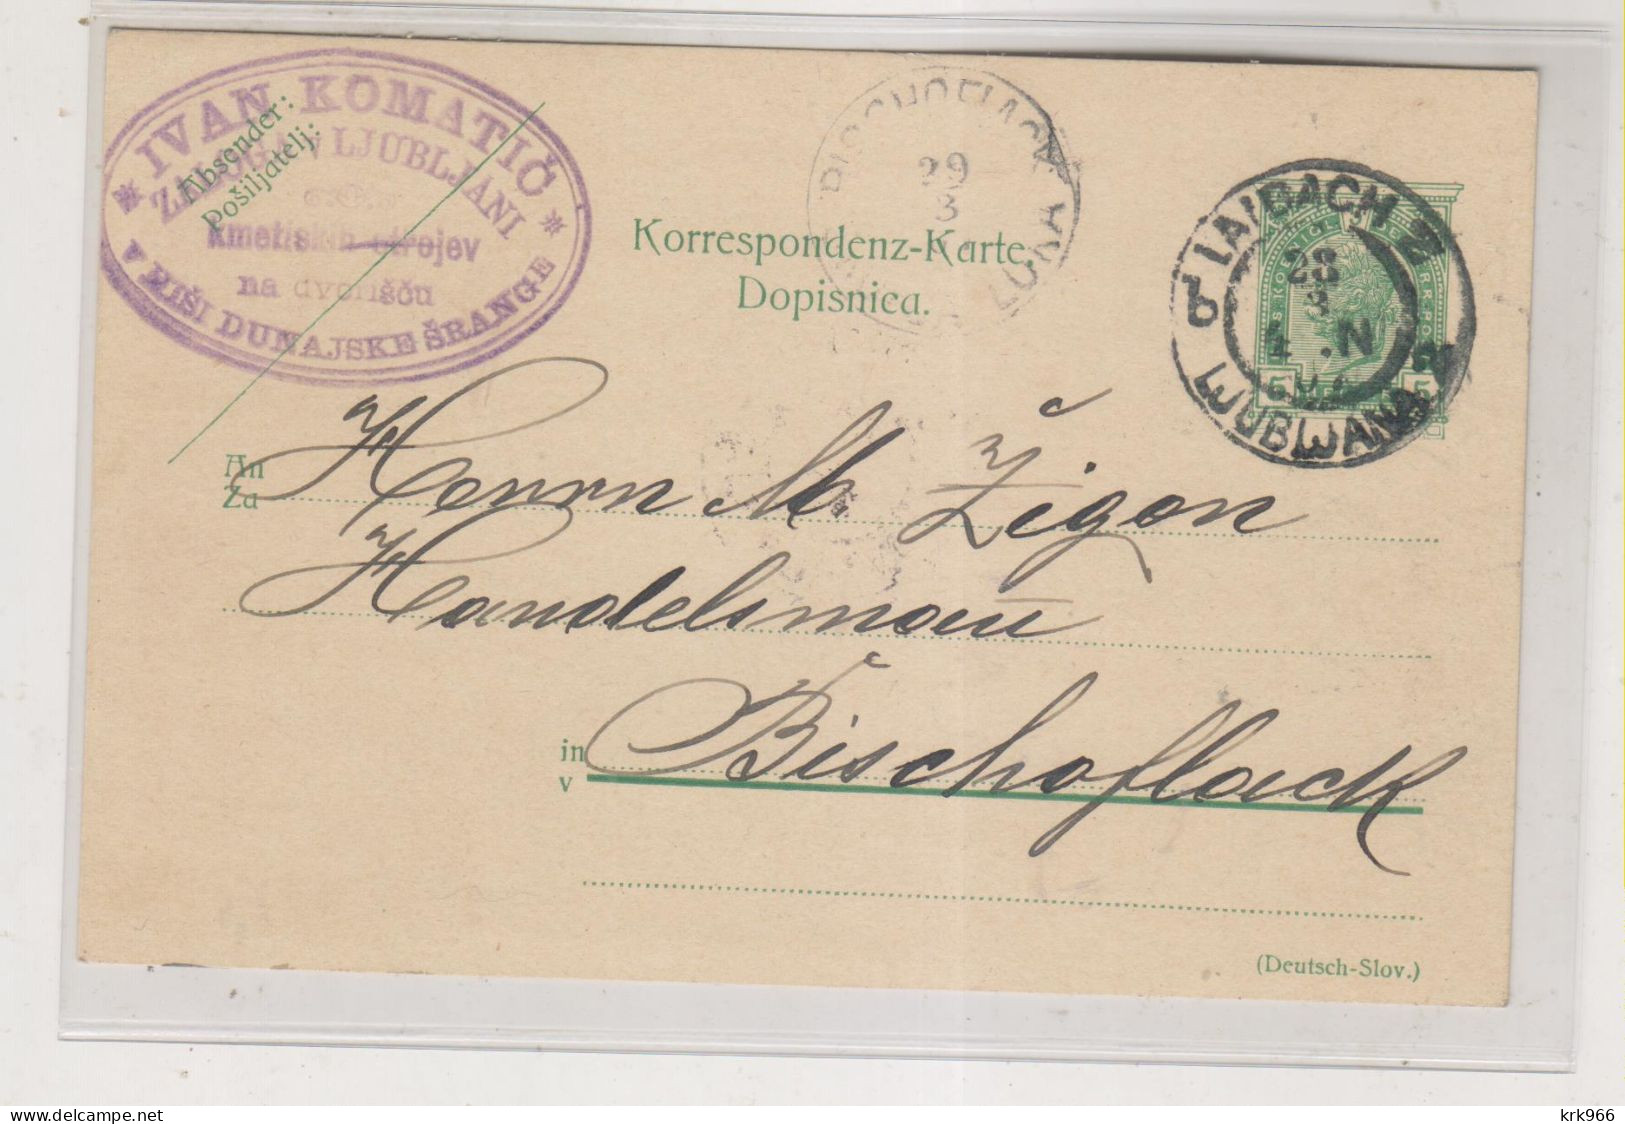 SLOVENIA,Austria LJUBLJANA LAIBACH Nice Postal Stationery - Eslovenia